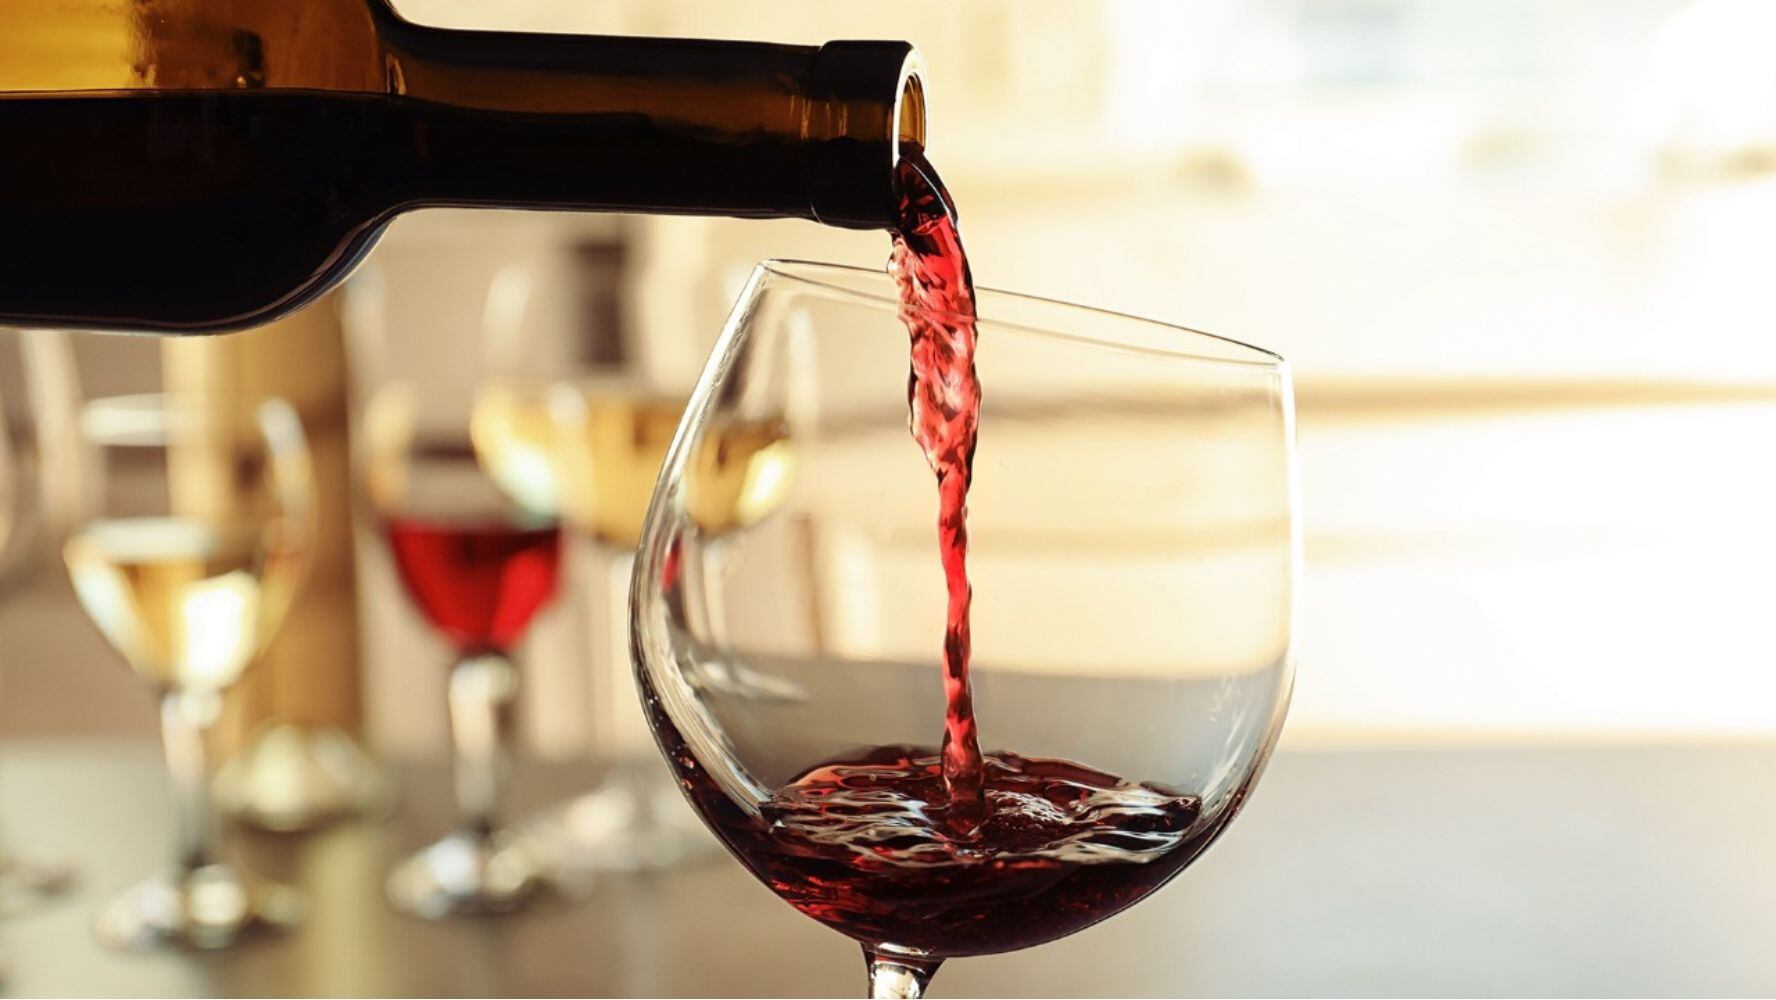 Elegir un buen vino depende de varios factores como el tipo de consumo que le darás. (Foto: Shutterstock)